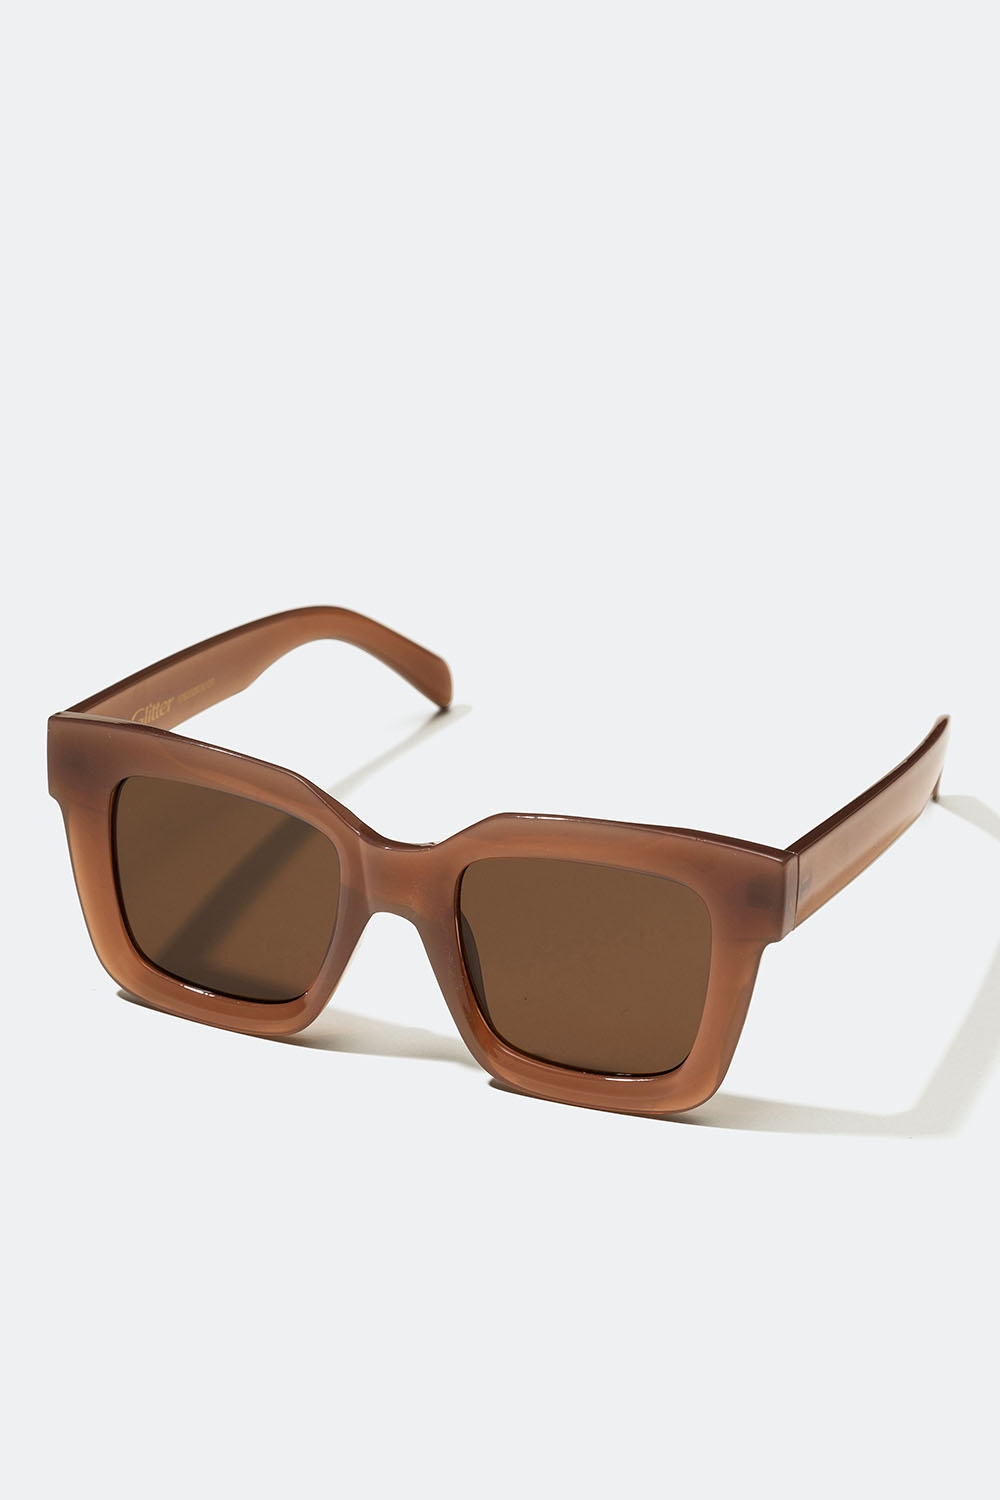 Store, brune solbriller med firkantet design i gruppen Accessories / Solbriller hos Glitter (176000978100)